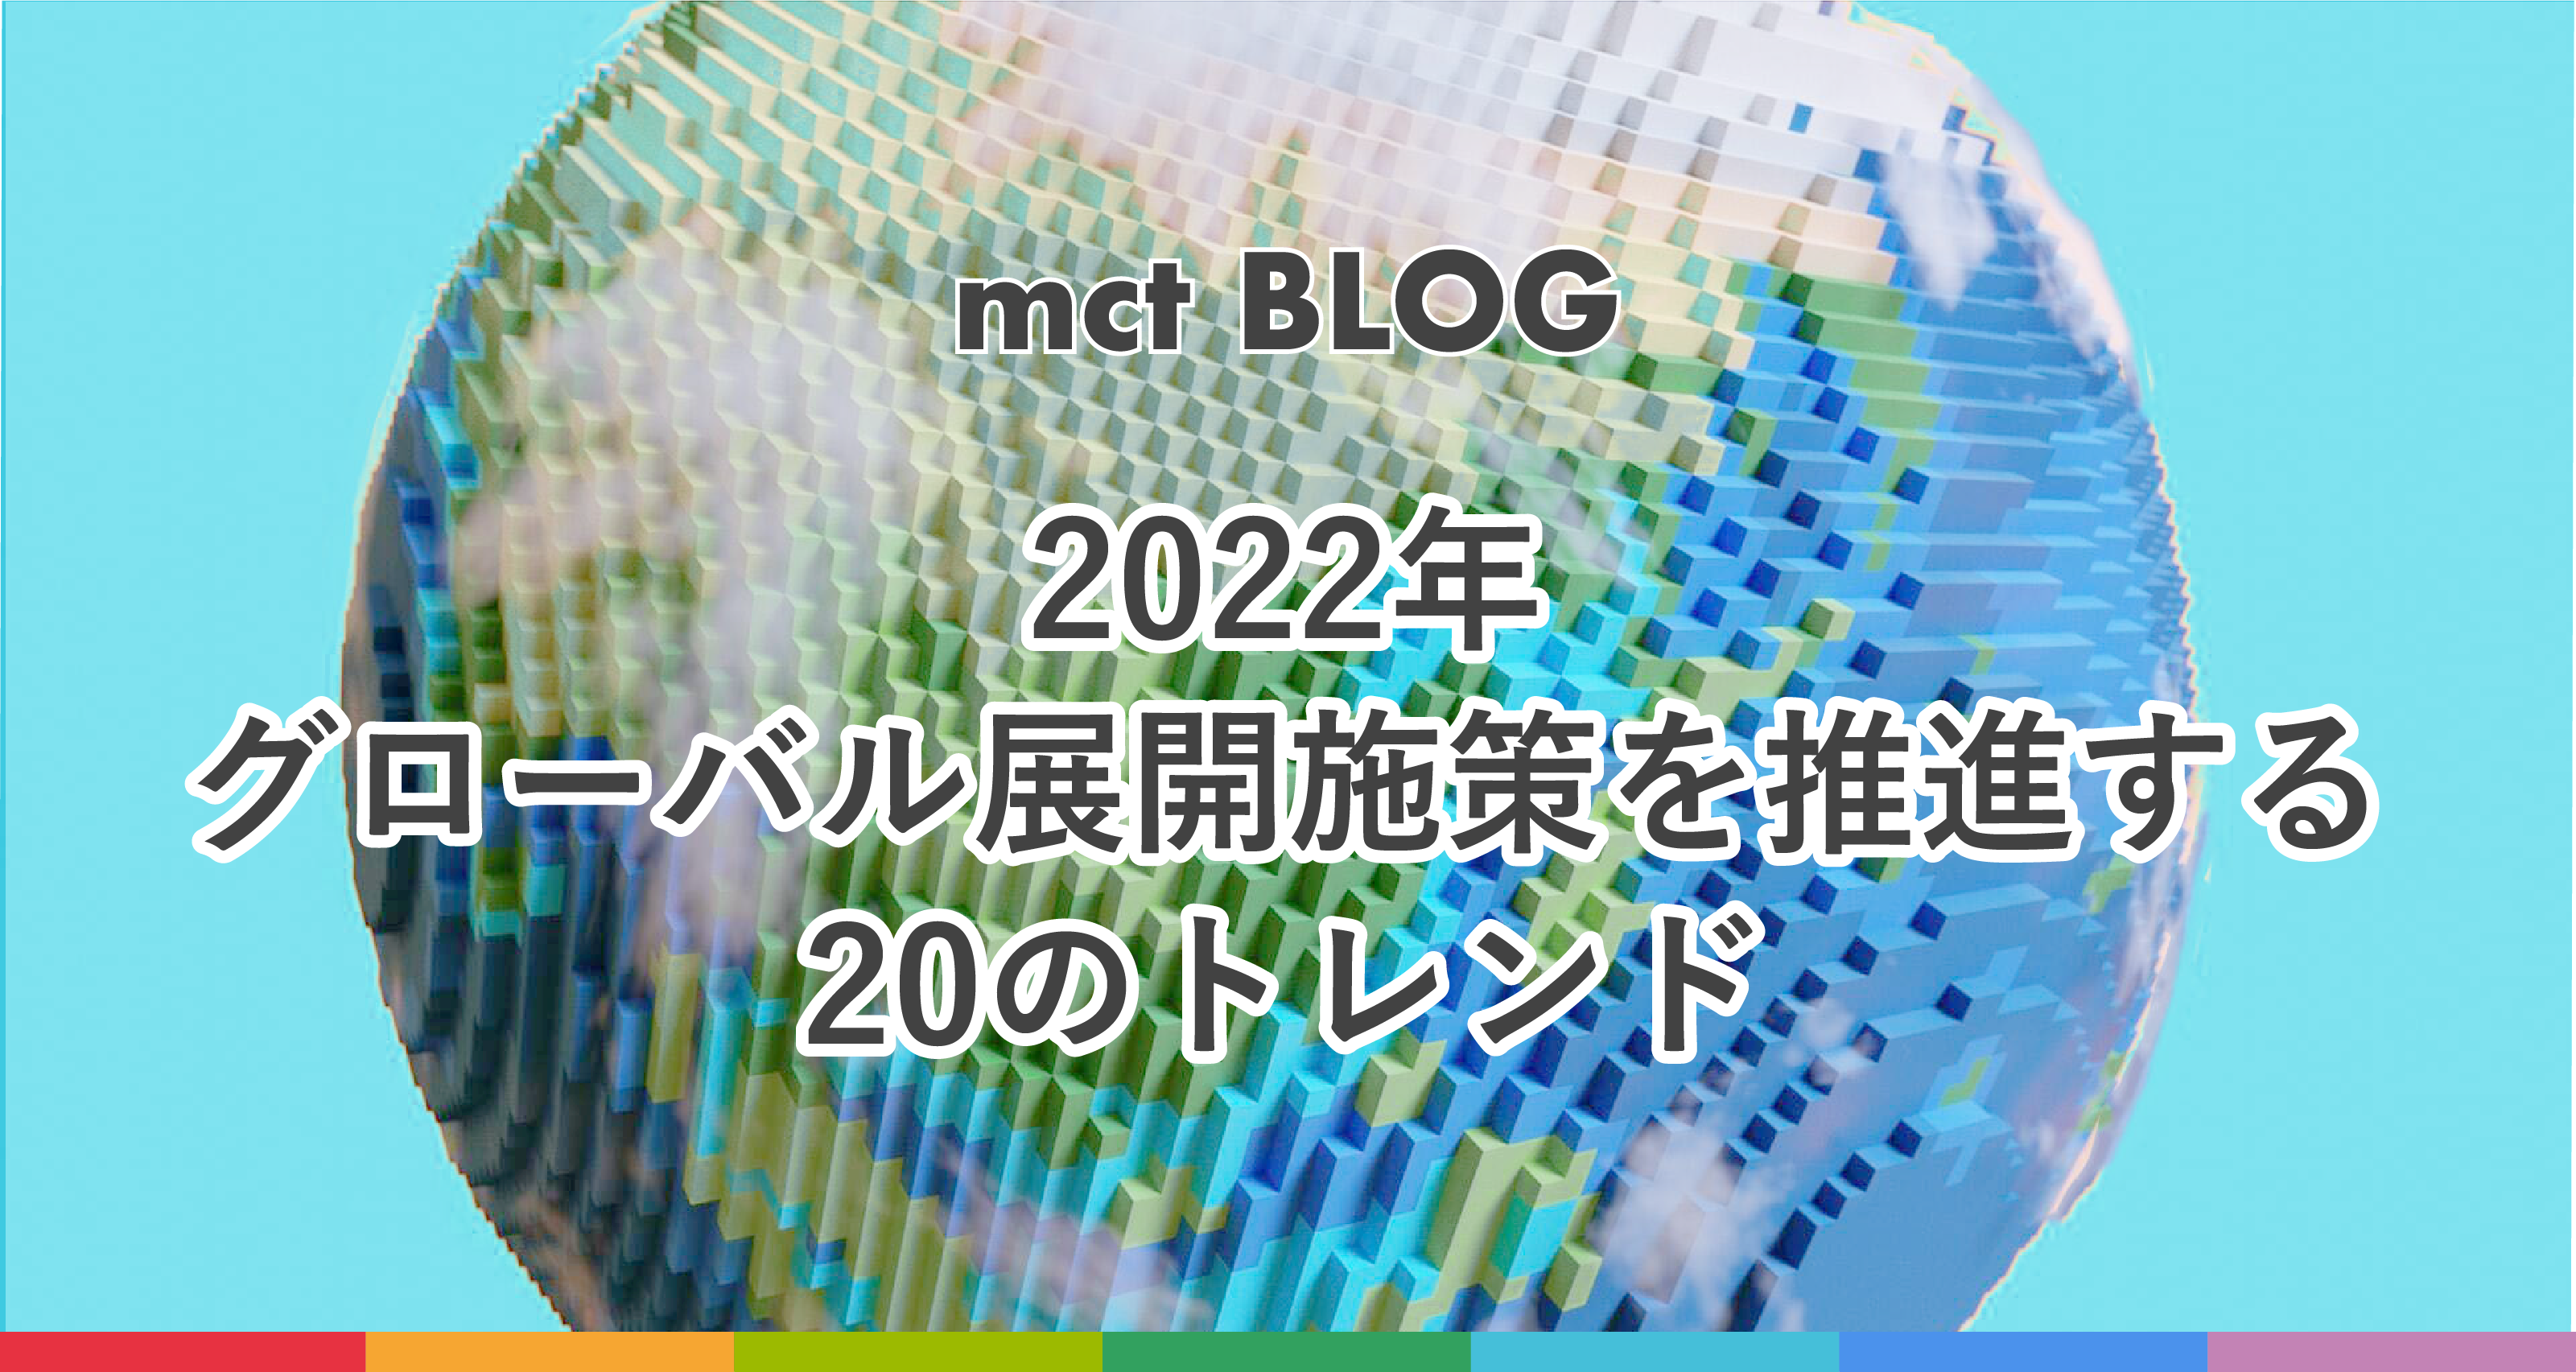 Blog｜2022年、グローバル展開施策を推進する20のトレンド